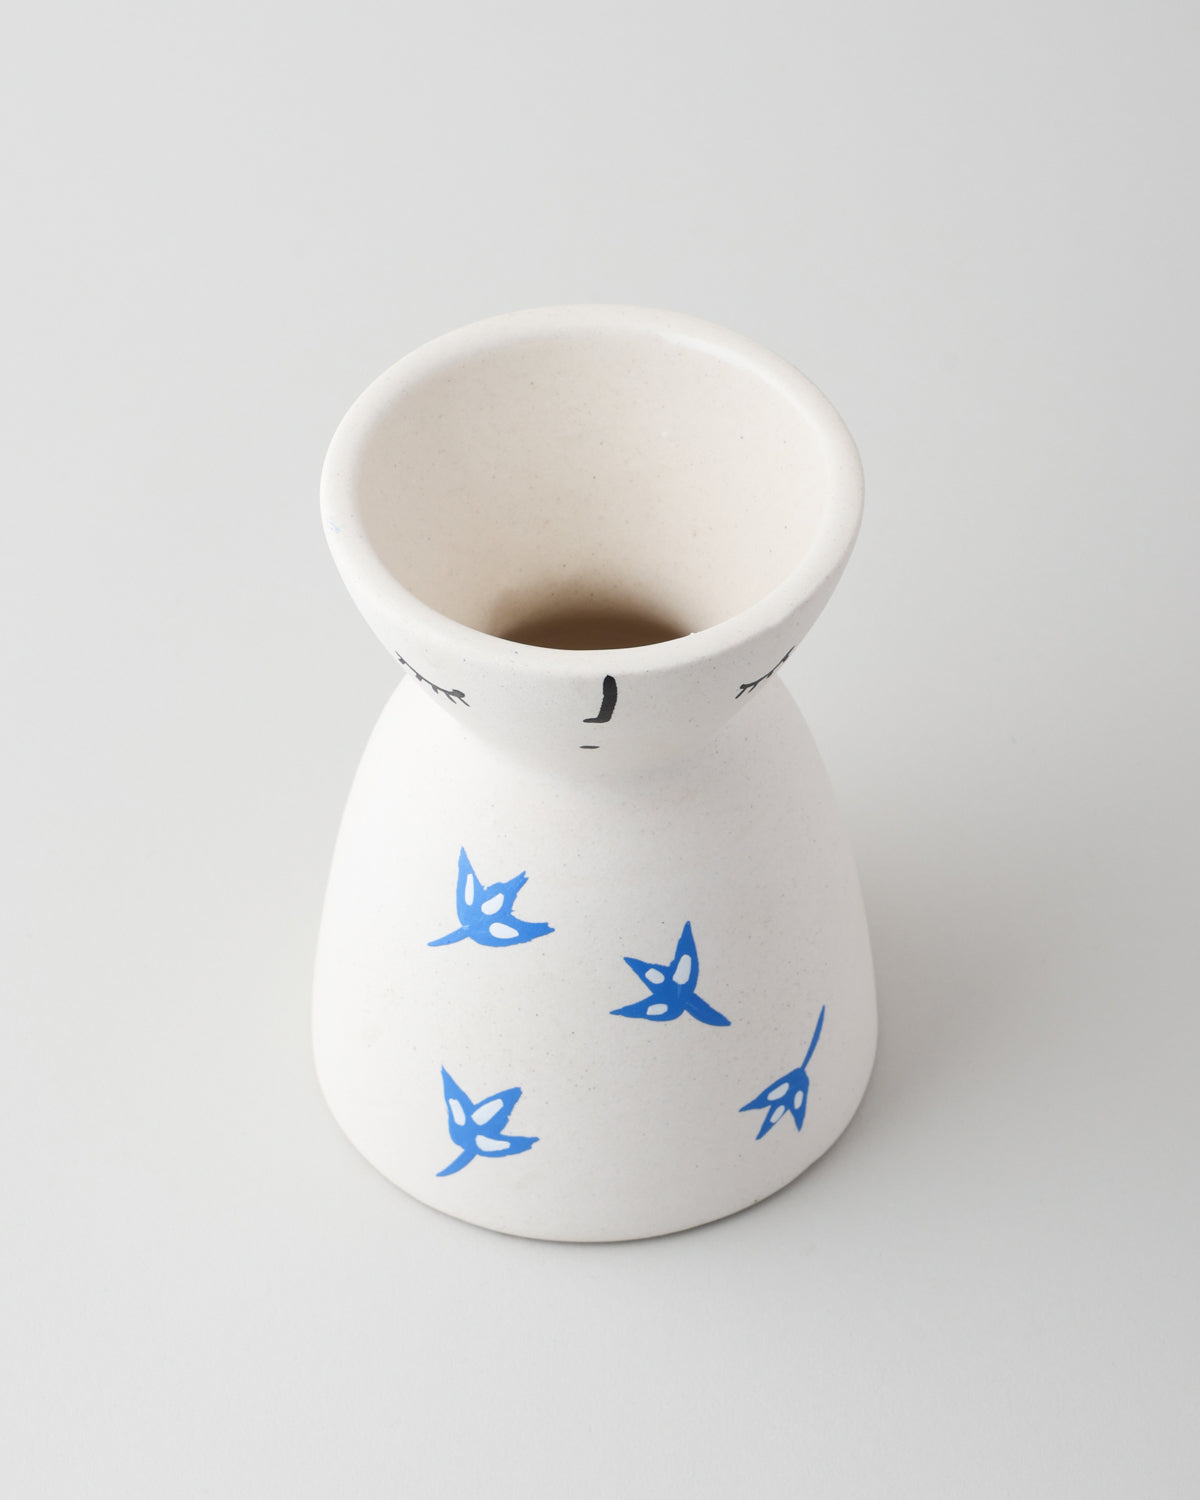 White Ceramic Flower Vase with Scattered Blue Leaves 5x4